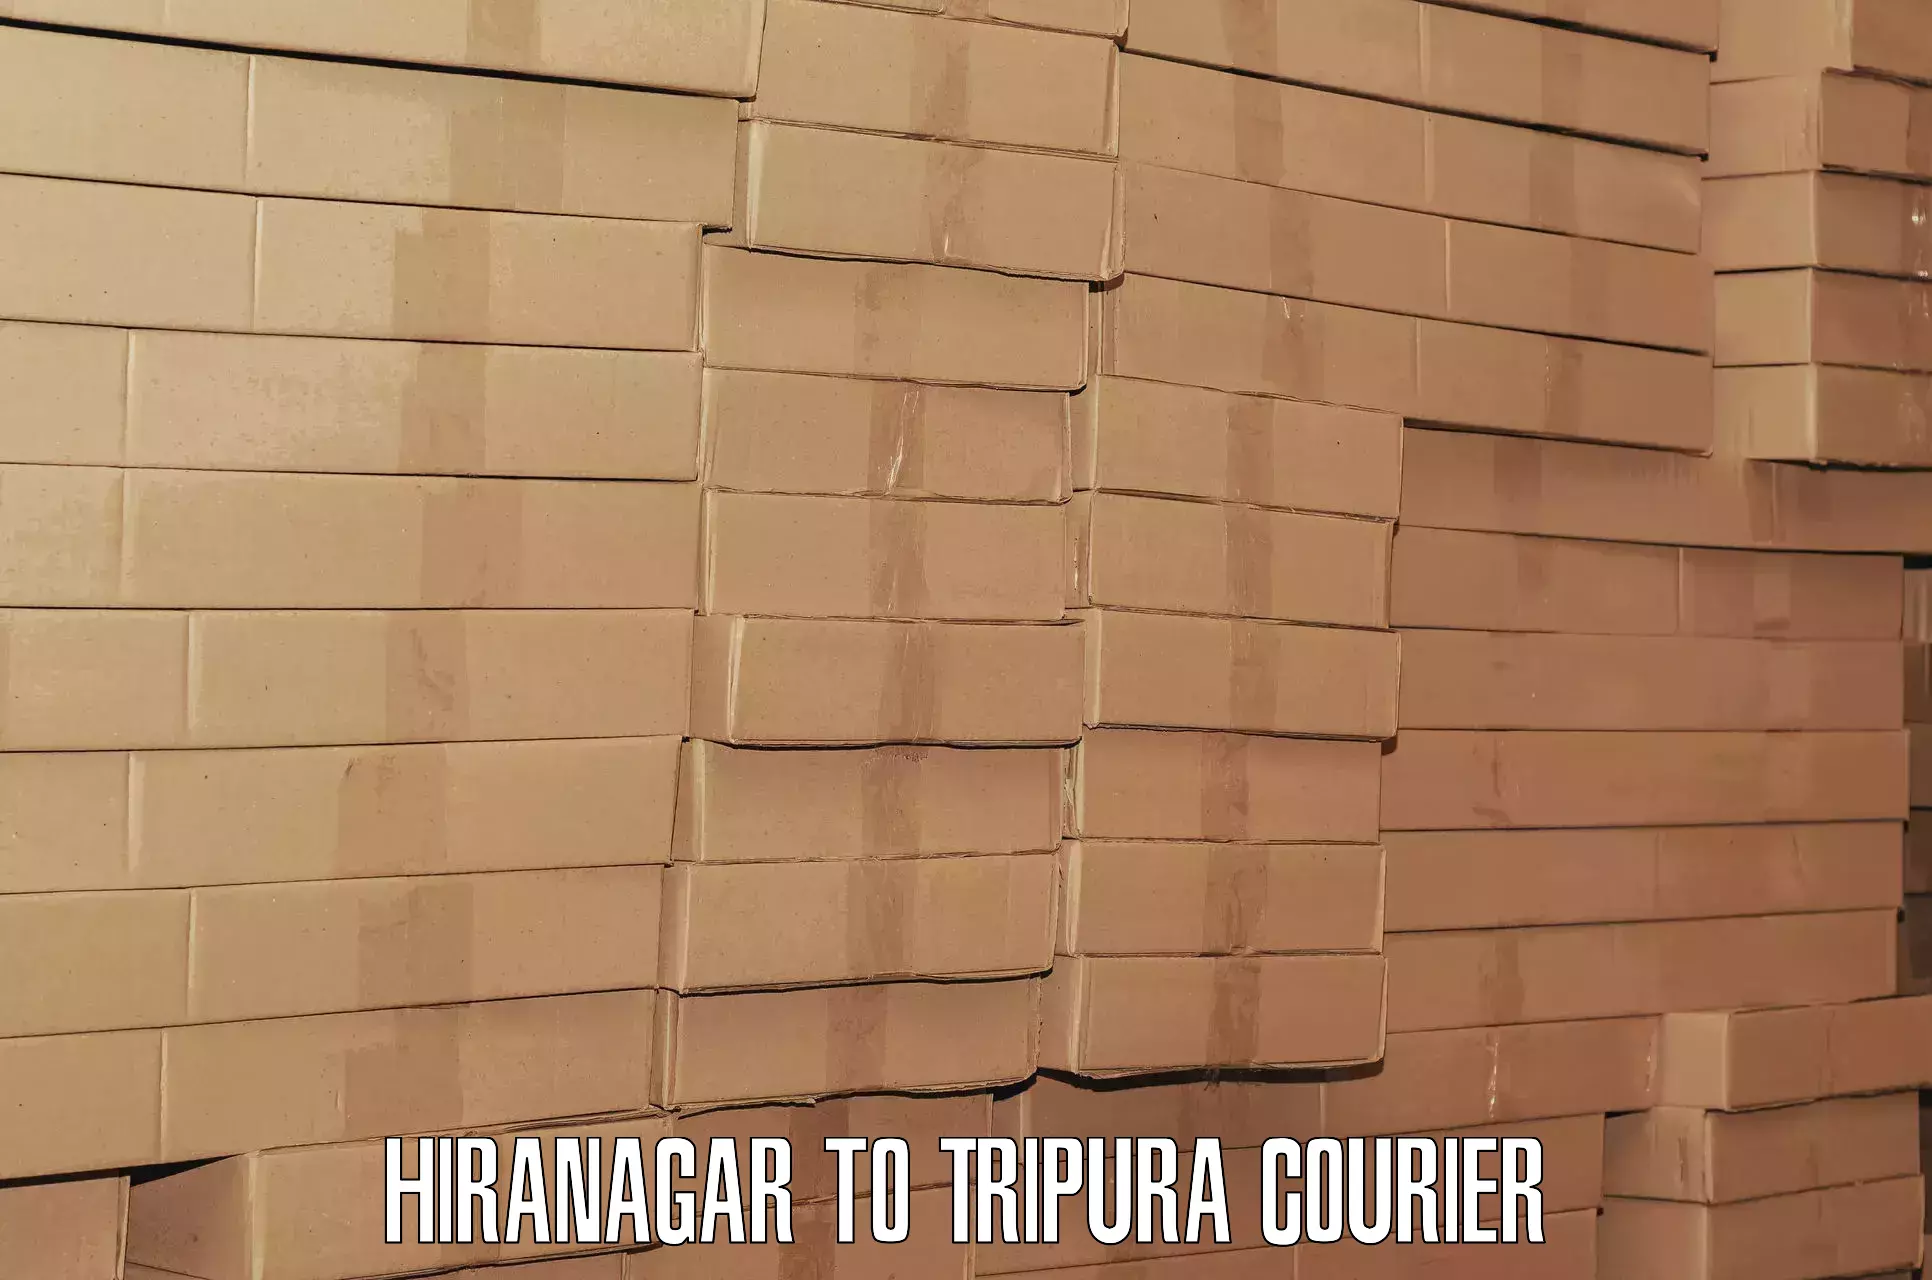 Baggage shipping service Hiranagar to Kailashahar